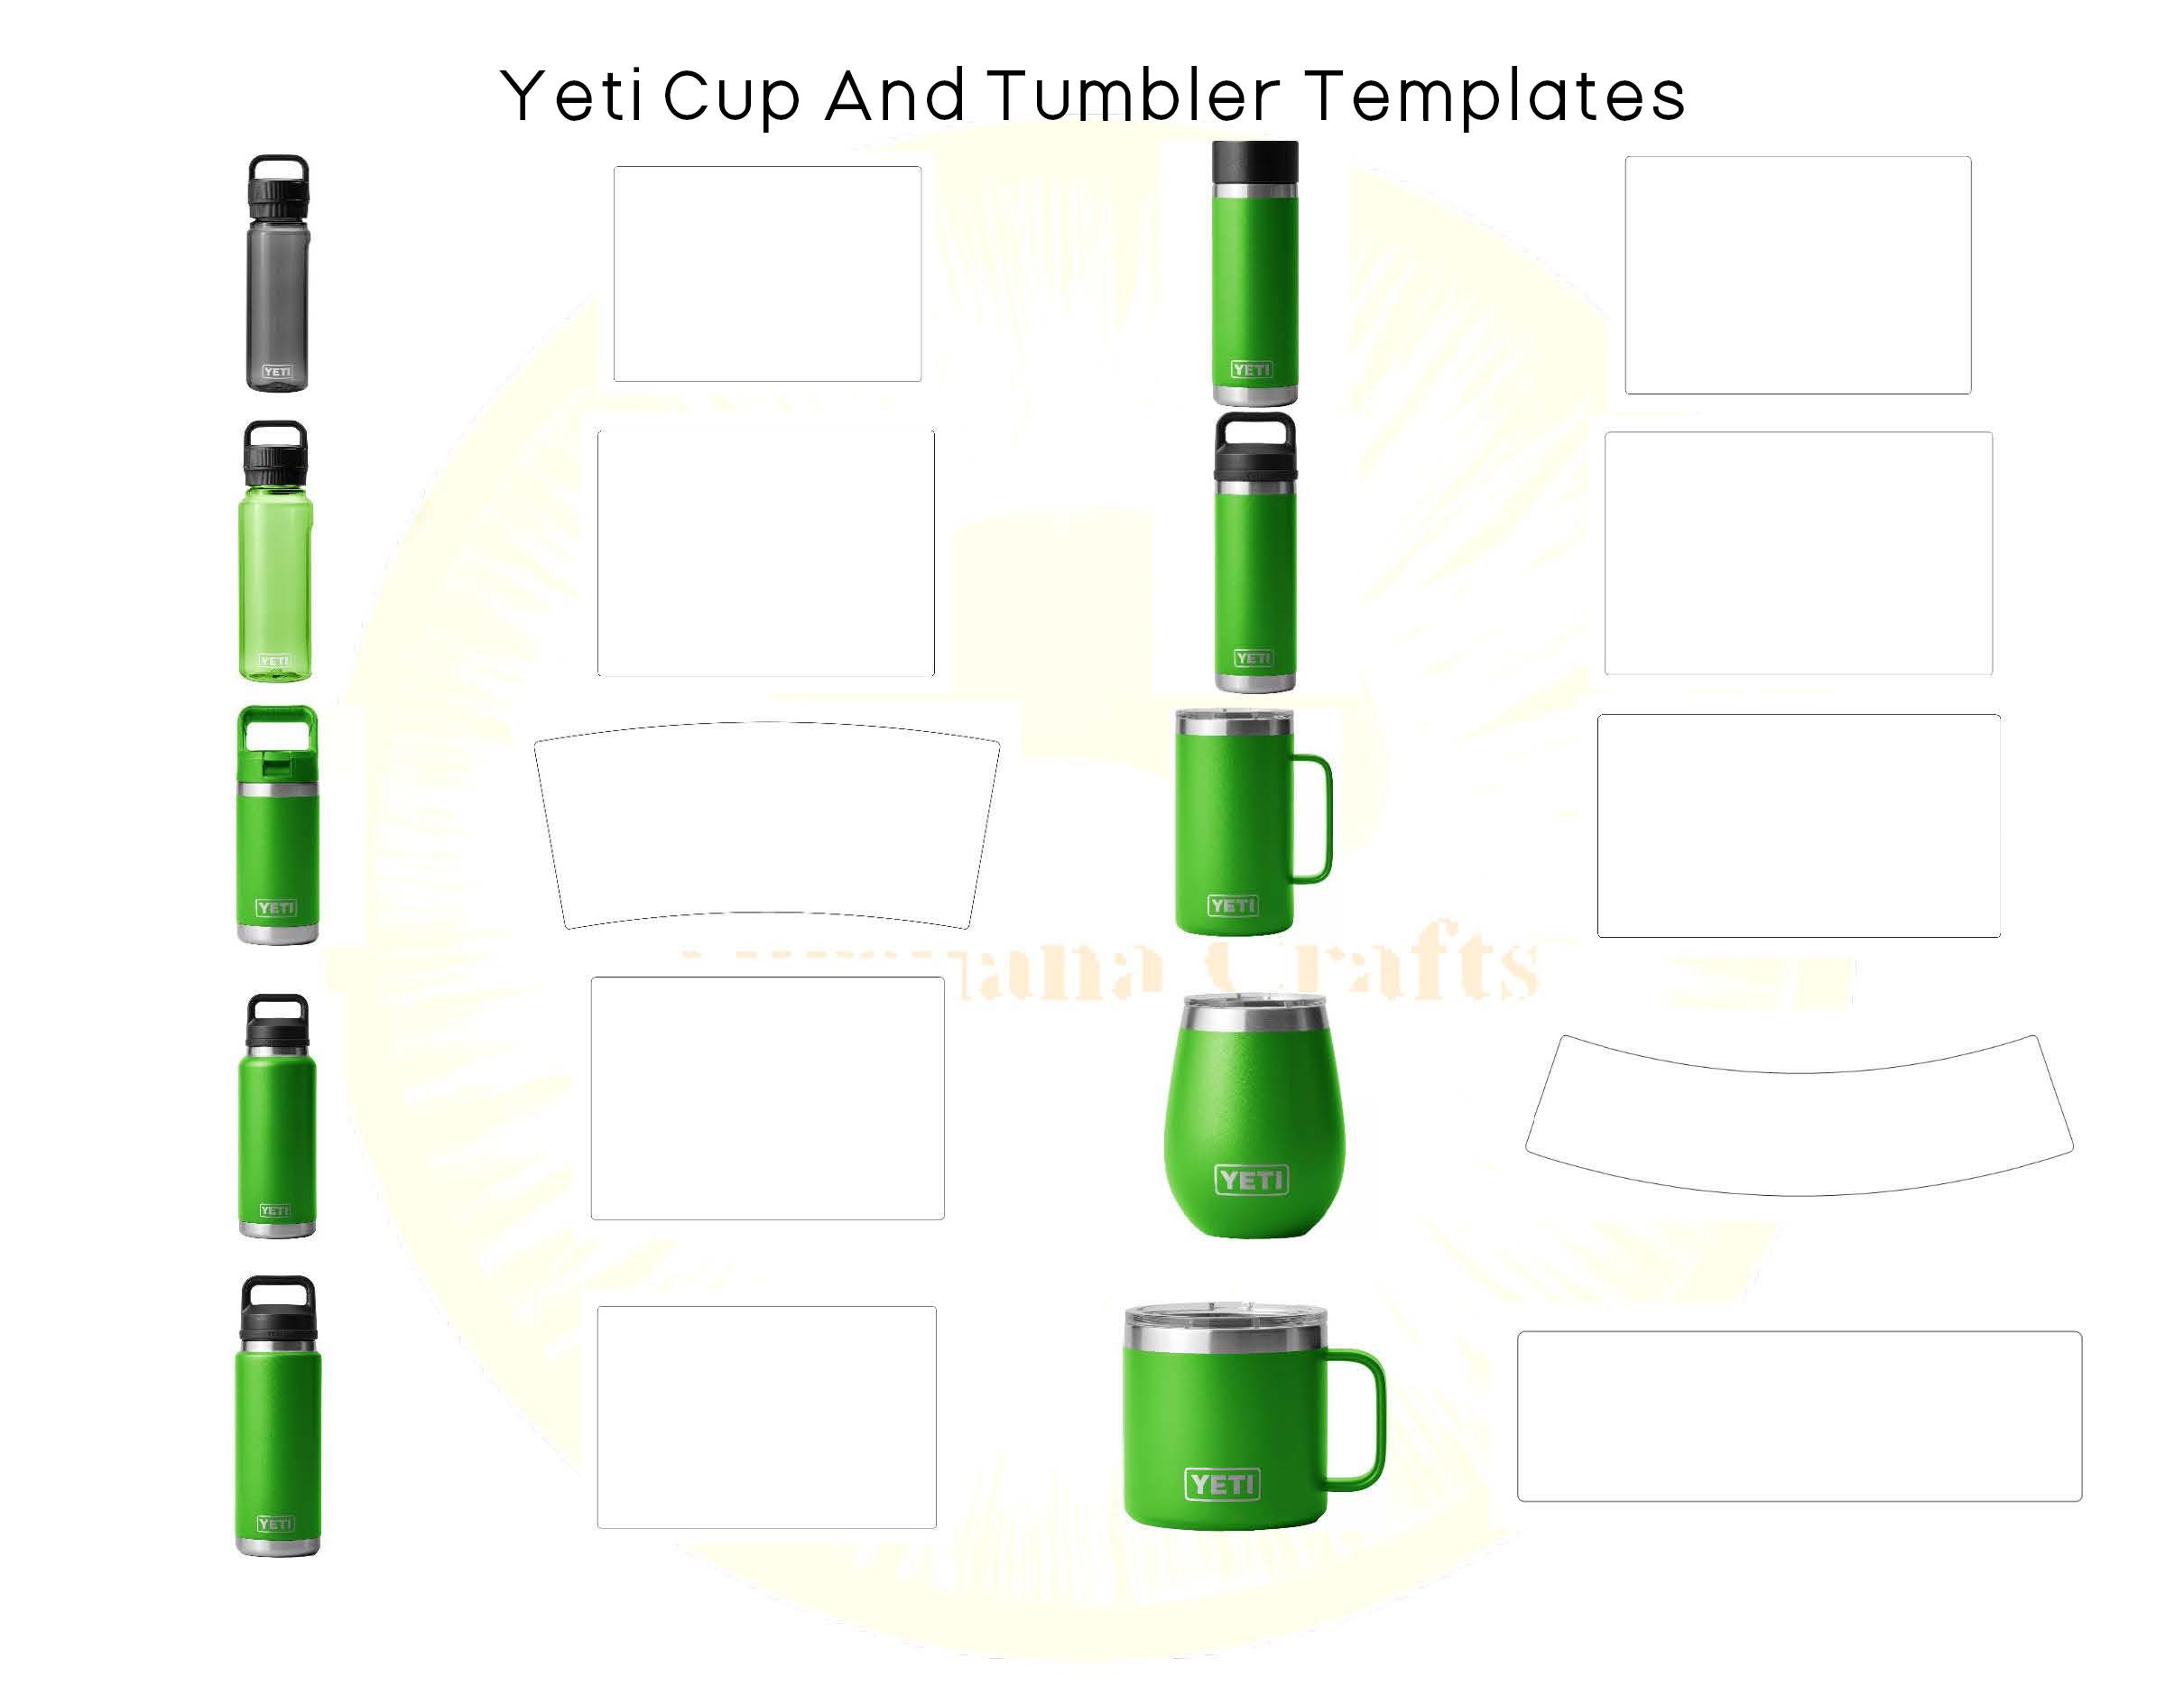 26oz Bottle Skin for YETI Rambler Bottle (Various Colors) – Armorskins